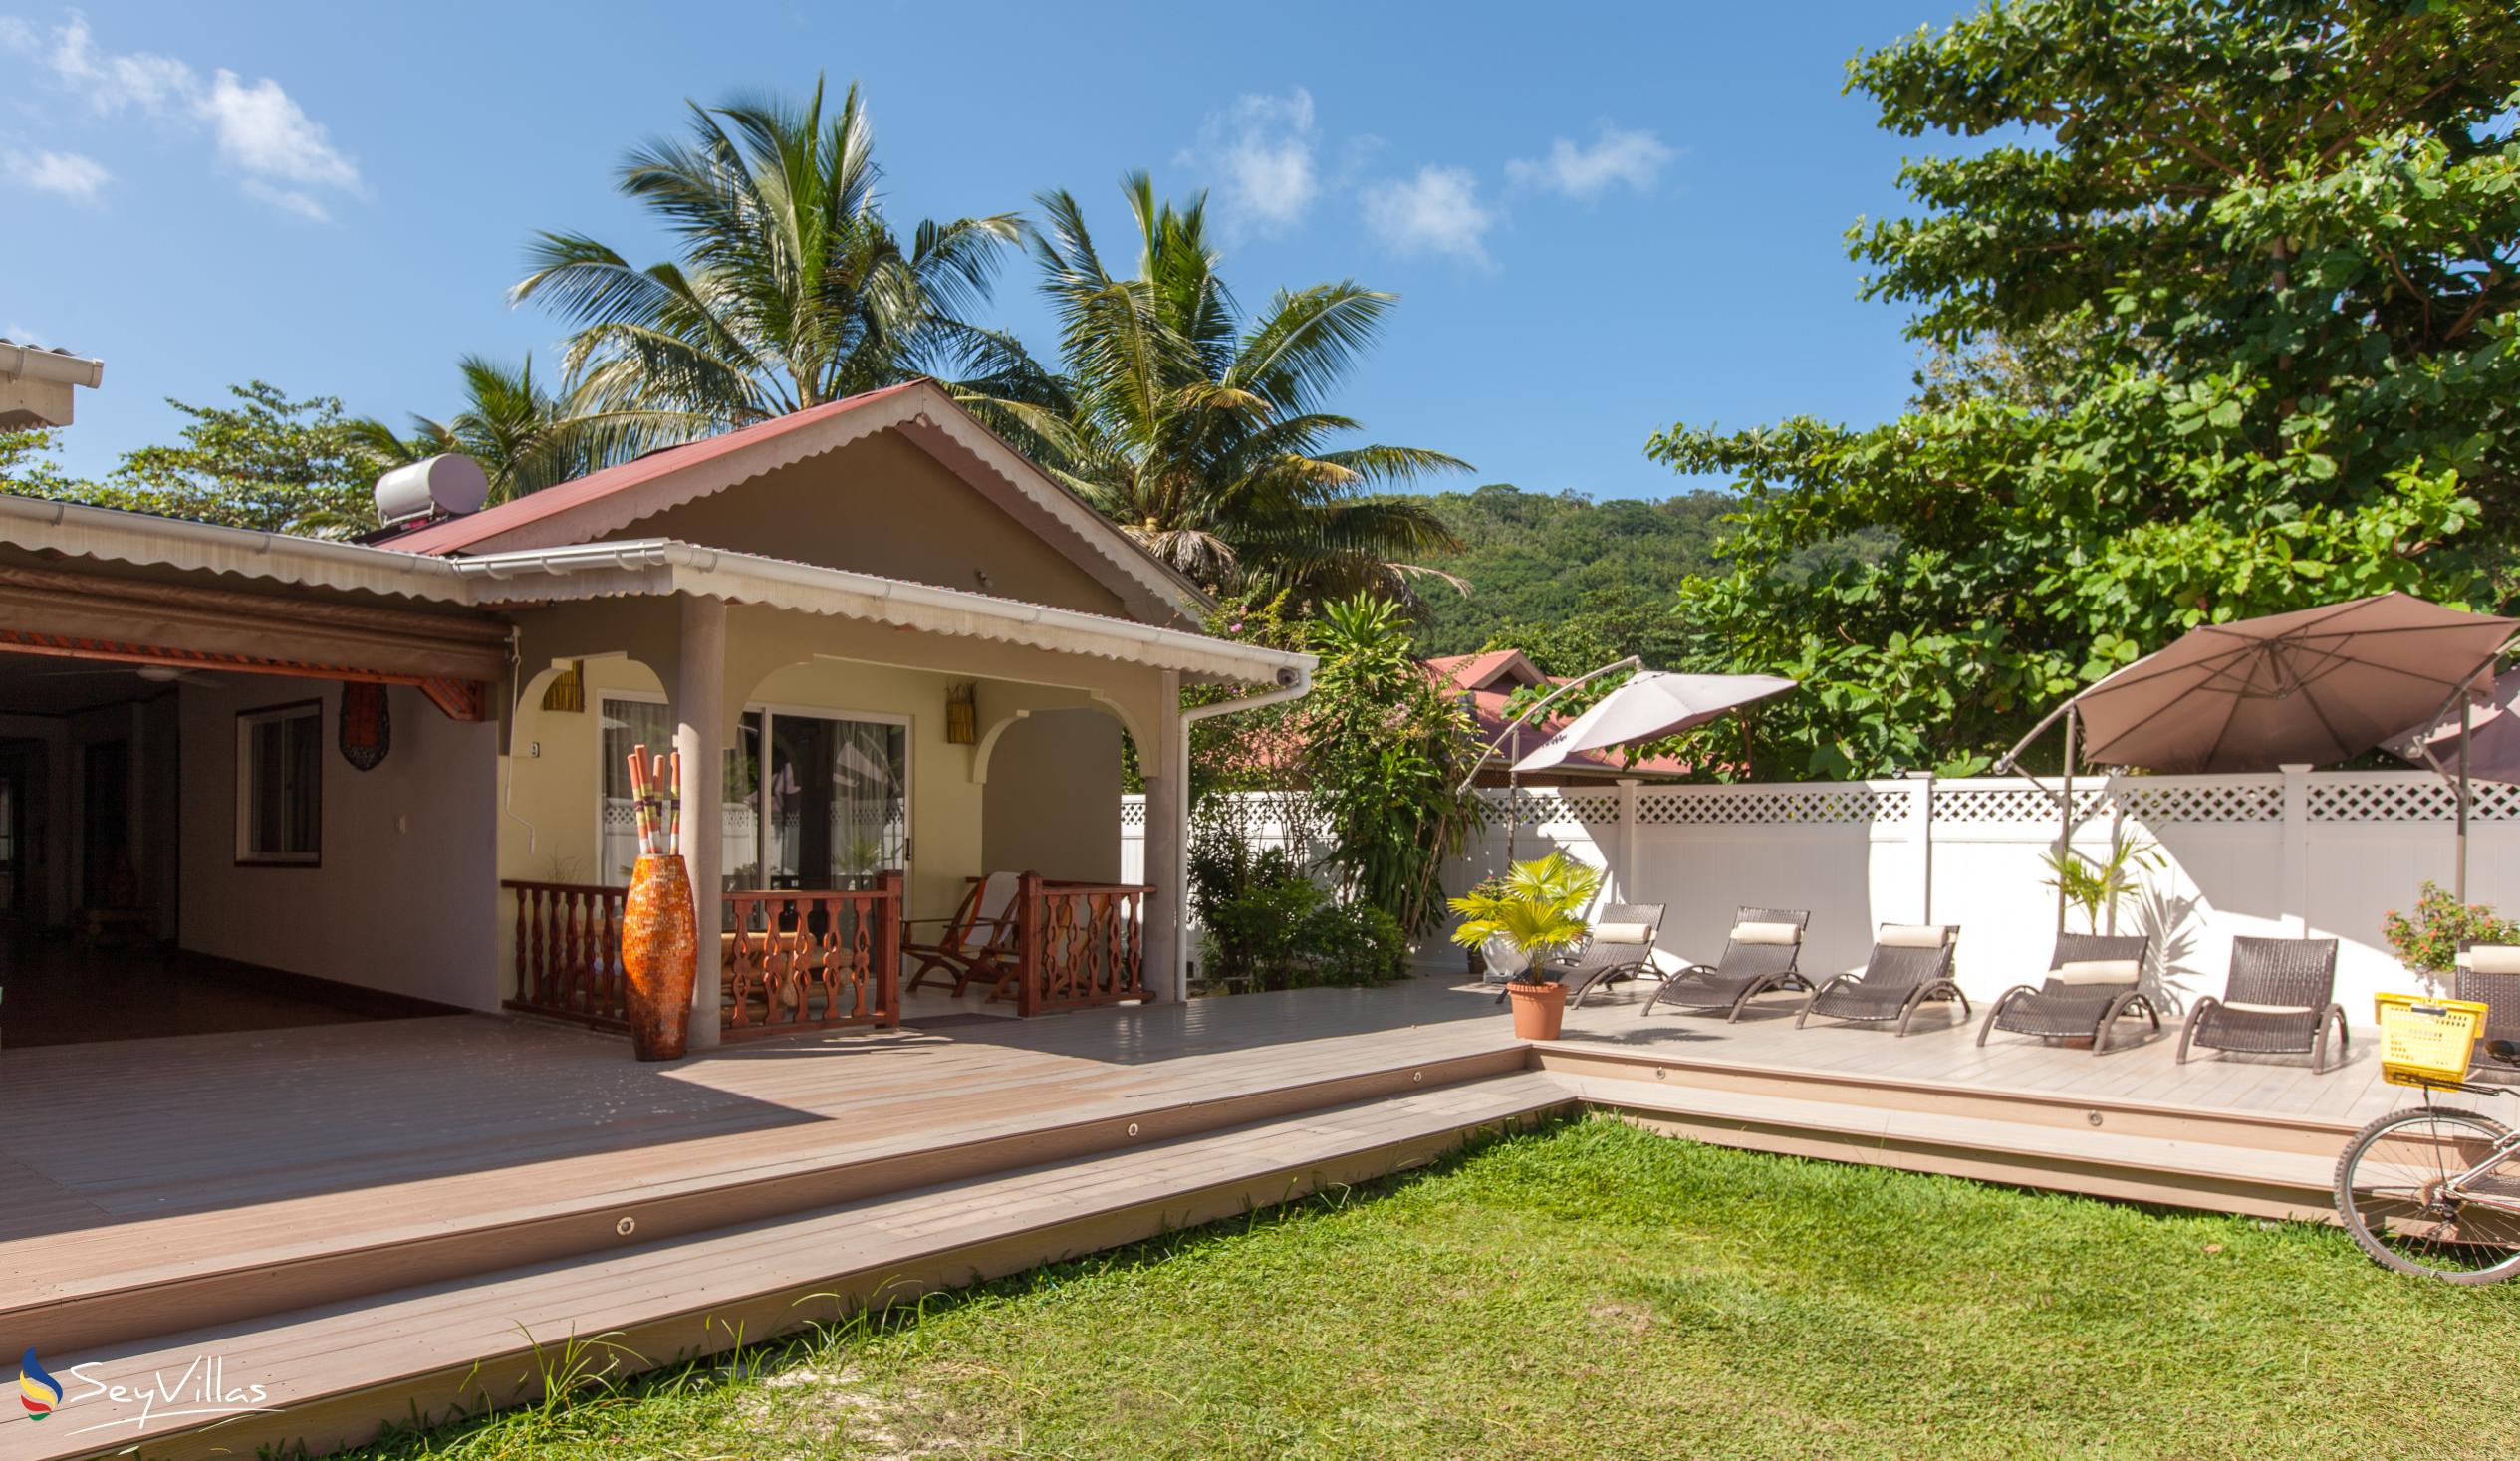 Foto 6: Villa Authentique - Aussenbereich - La Digue (Seychellen)